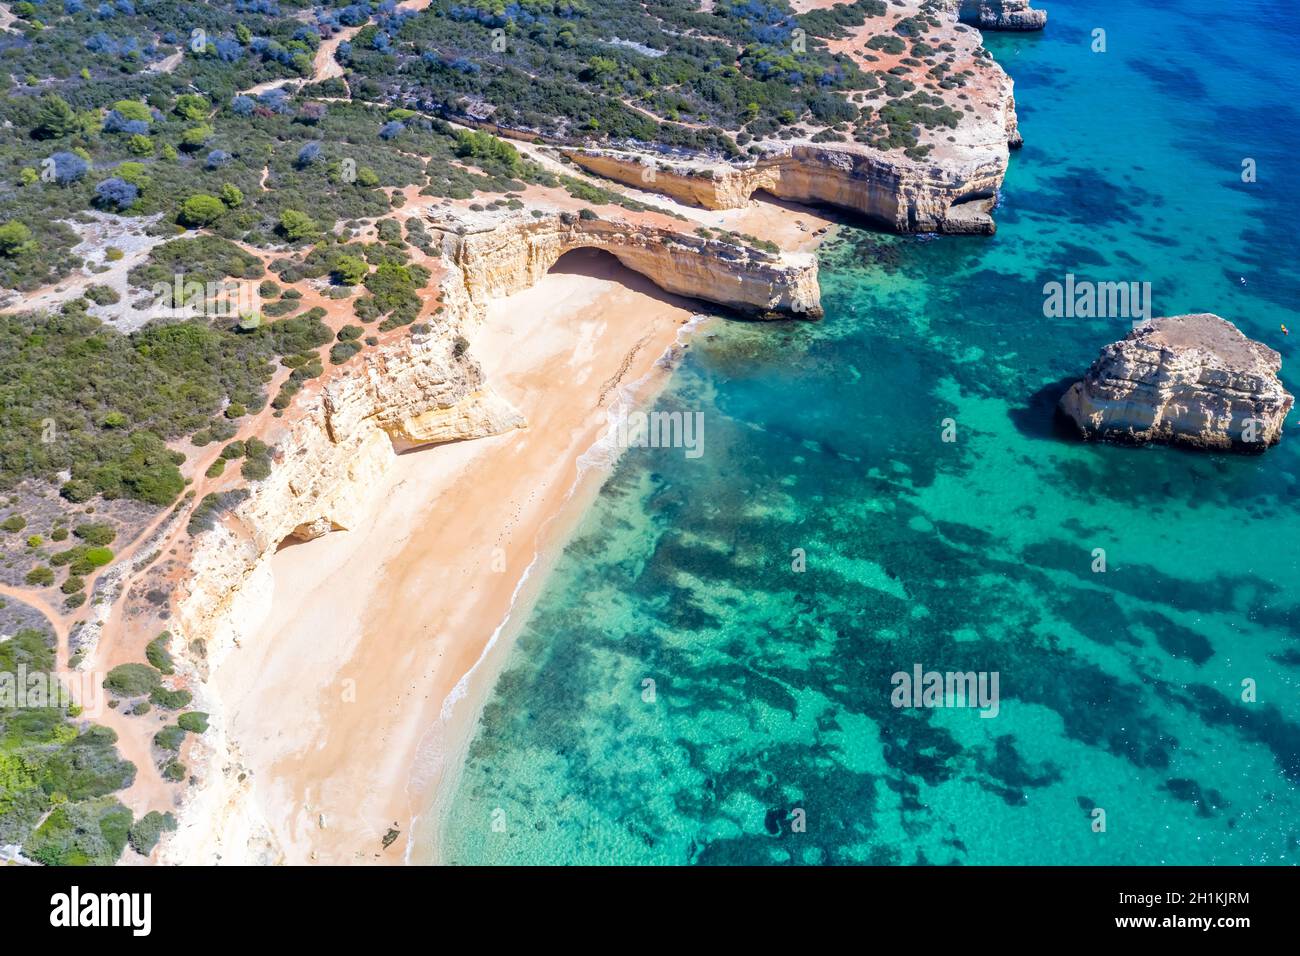 Portugal Algarve beach Praia da Marinha sea ocean drone view aerial photo from above water Stock Photo